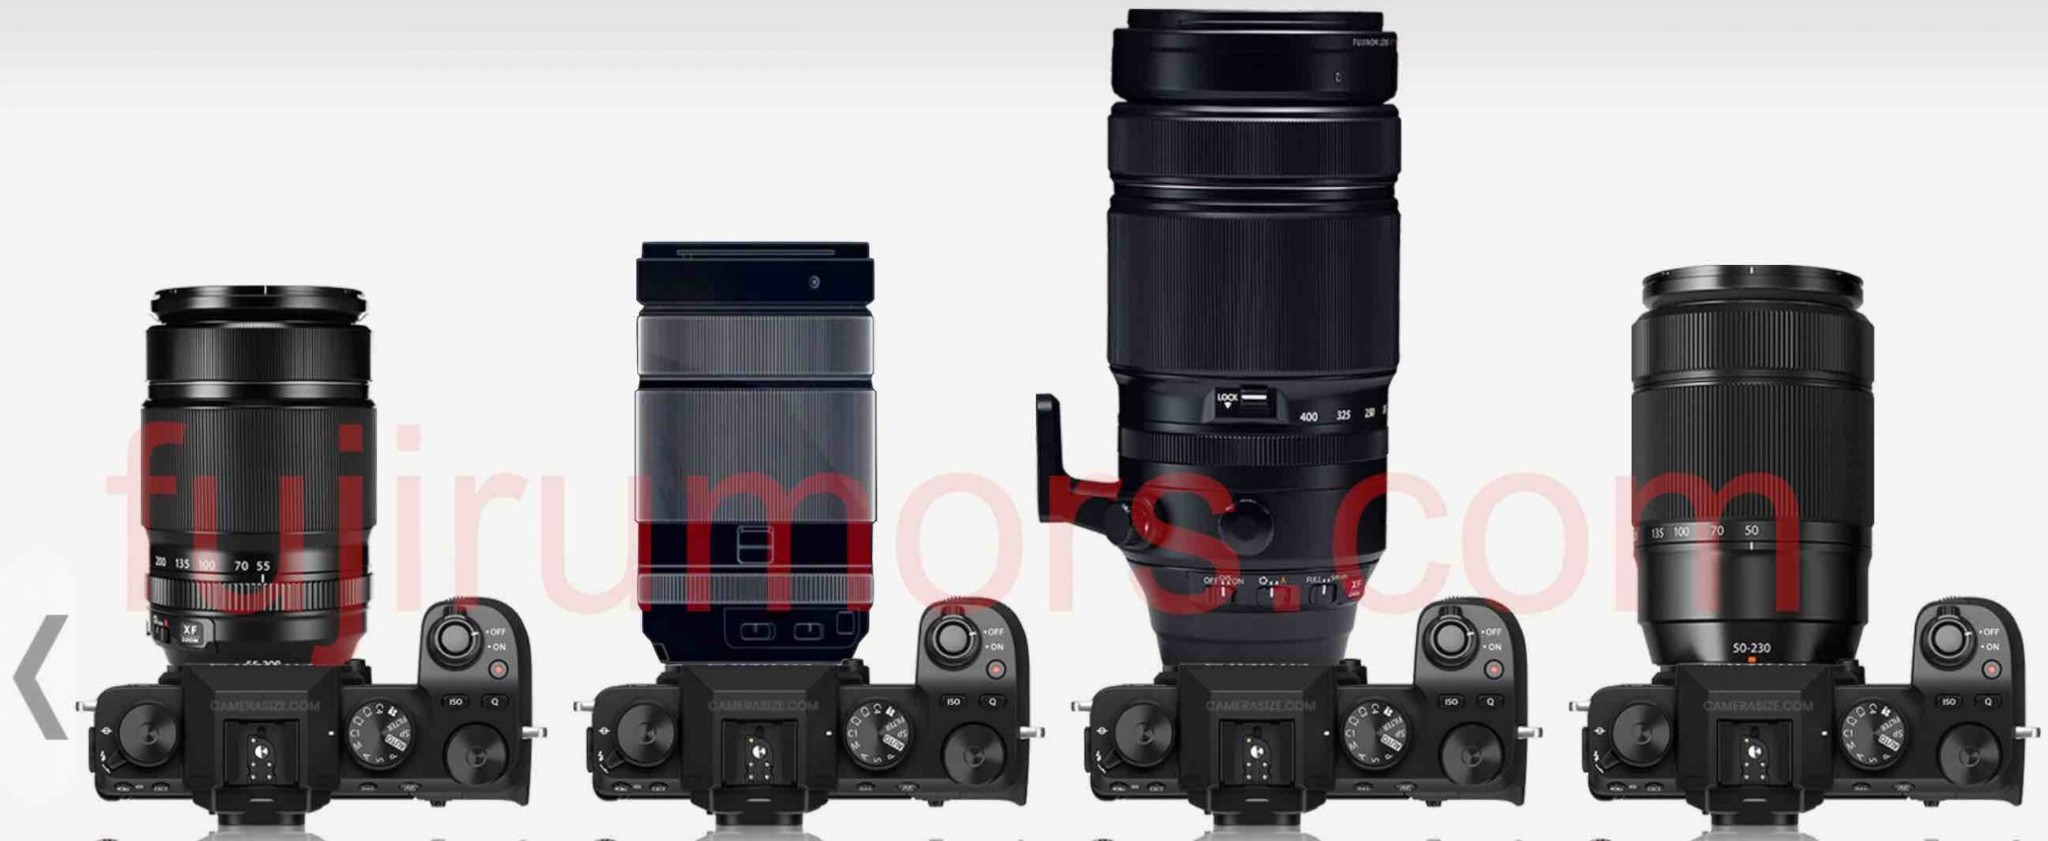 Ống kính Fujinon XF 70-300mm F4-5.6 sẽ có kích thước filter 67mm